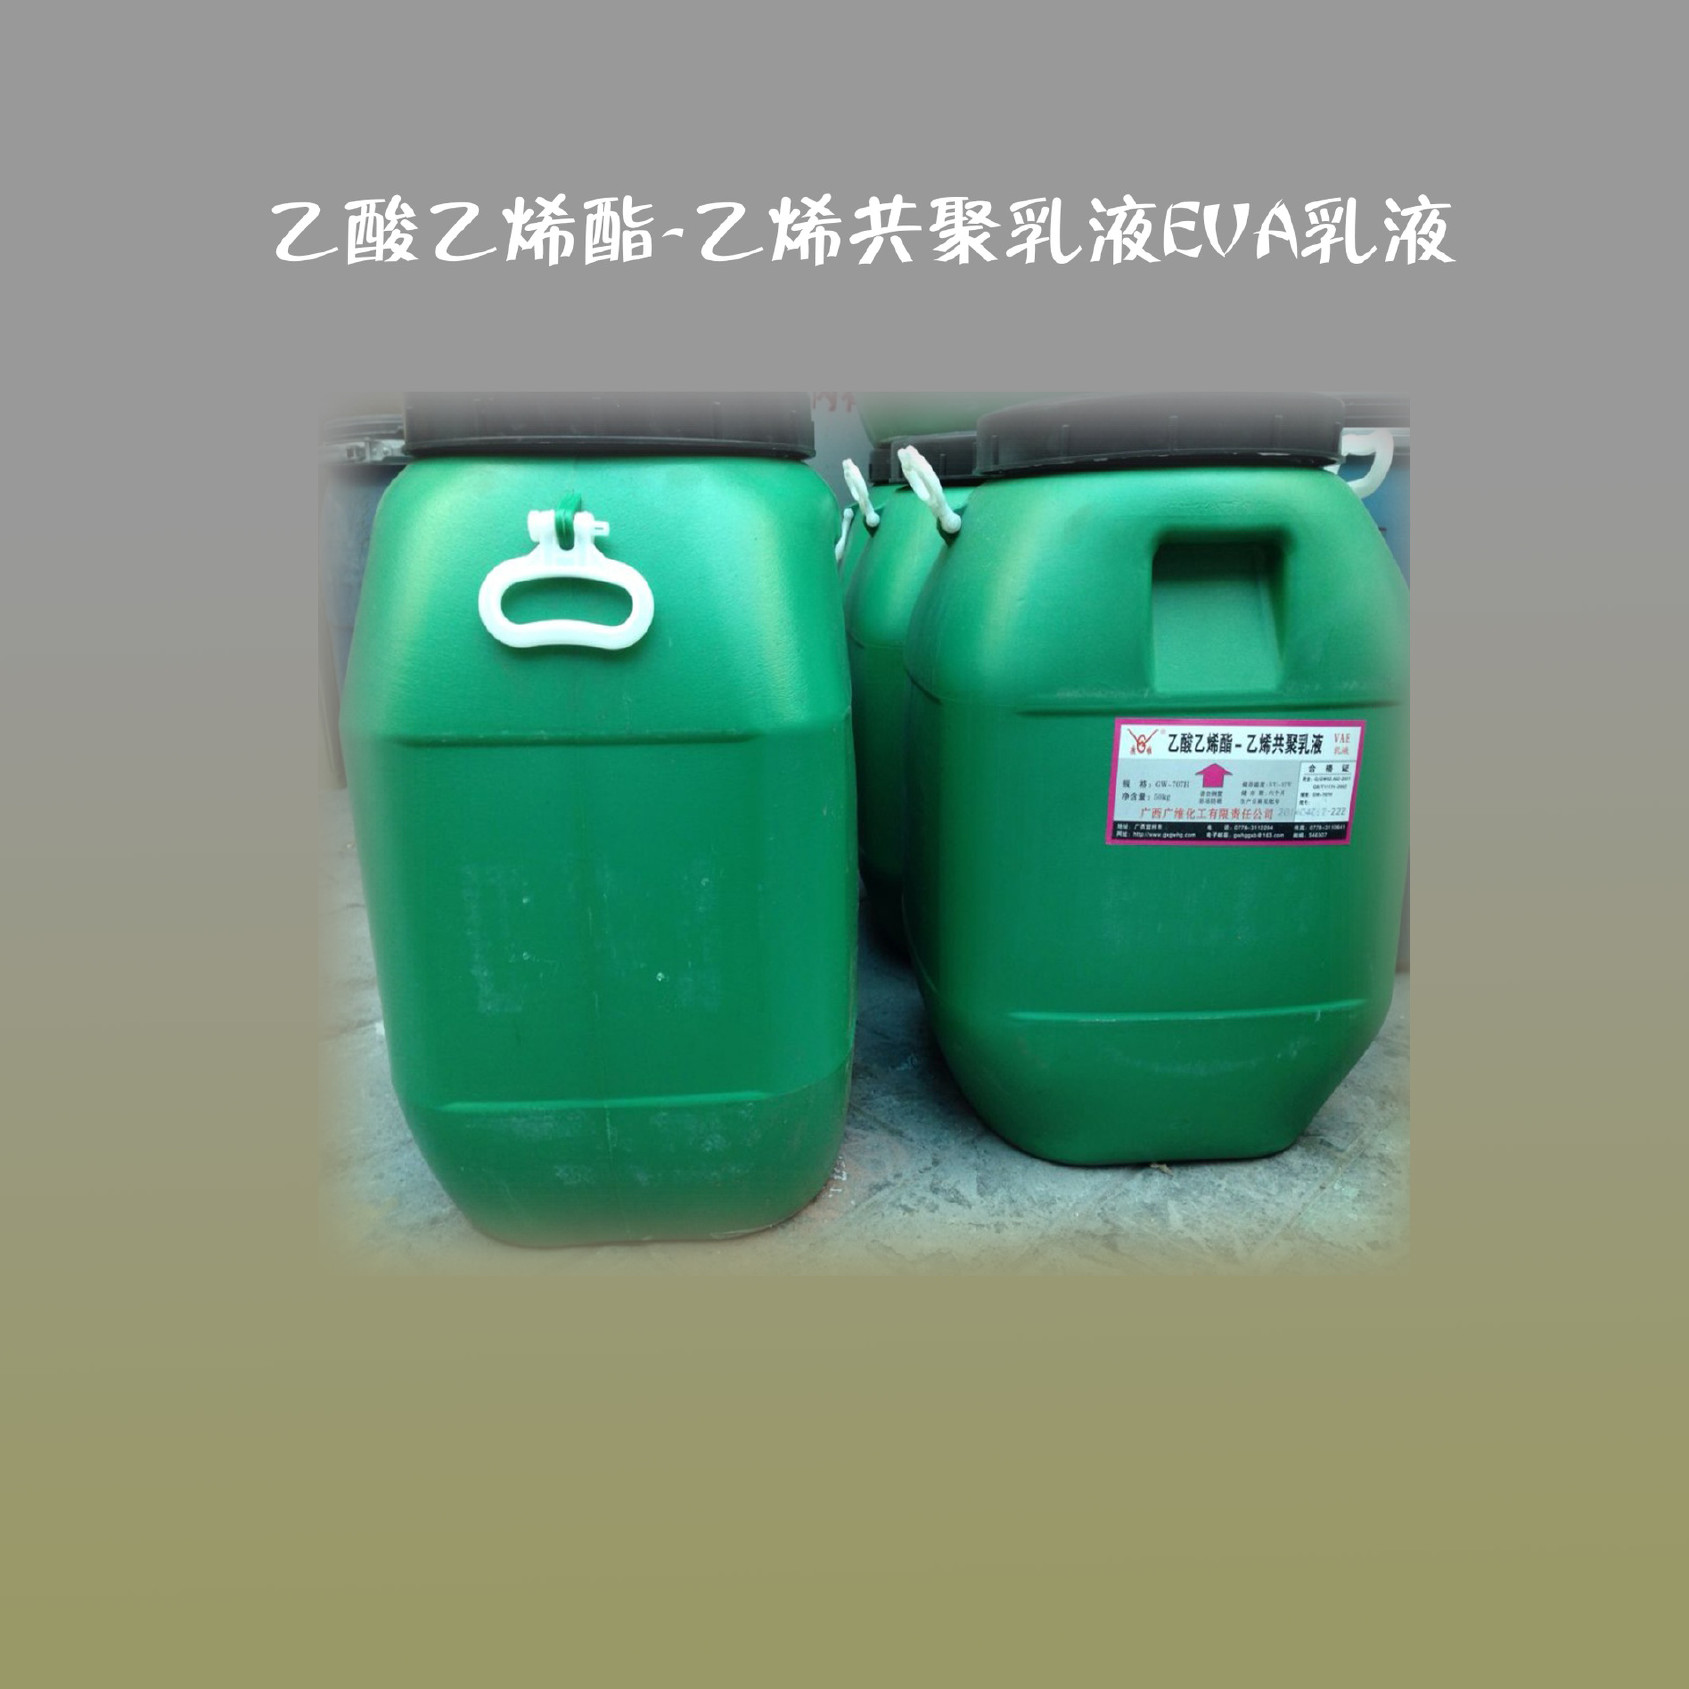 河南郑州大量批发广西广维GW-707H乙酸乙烯酯-乙烯共聚乳液EVA乳液示例图2